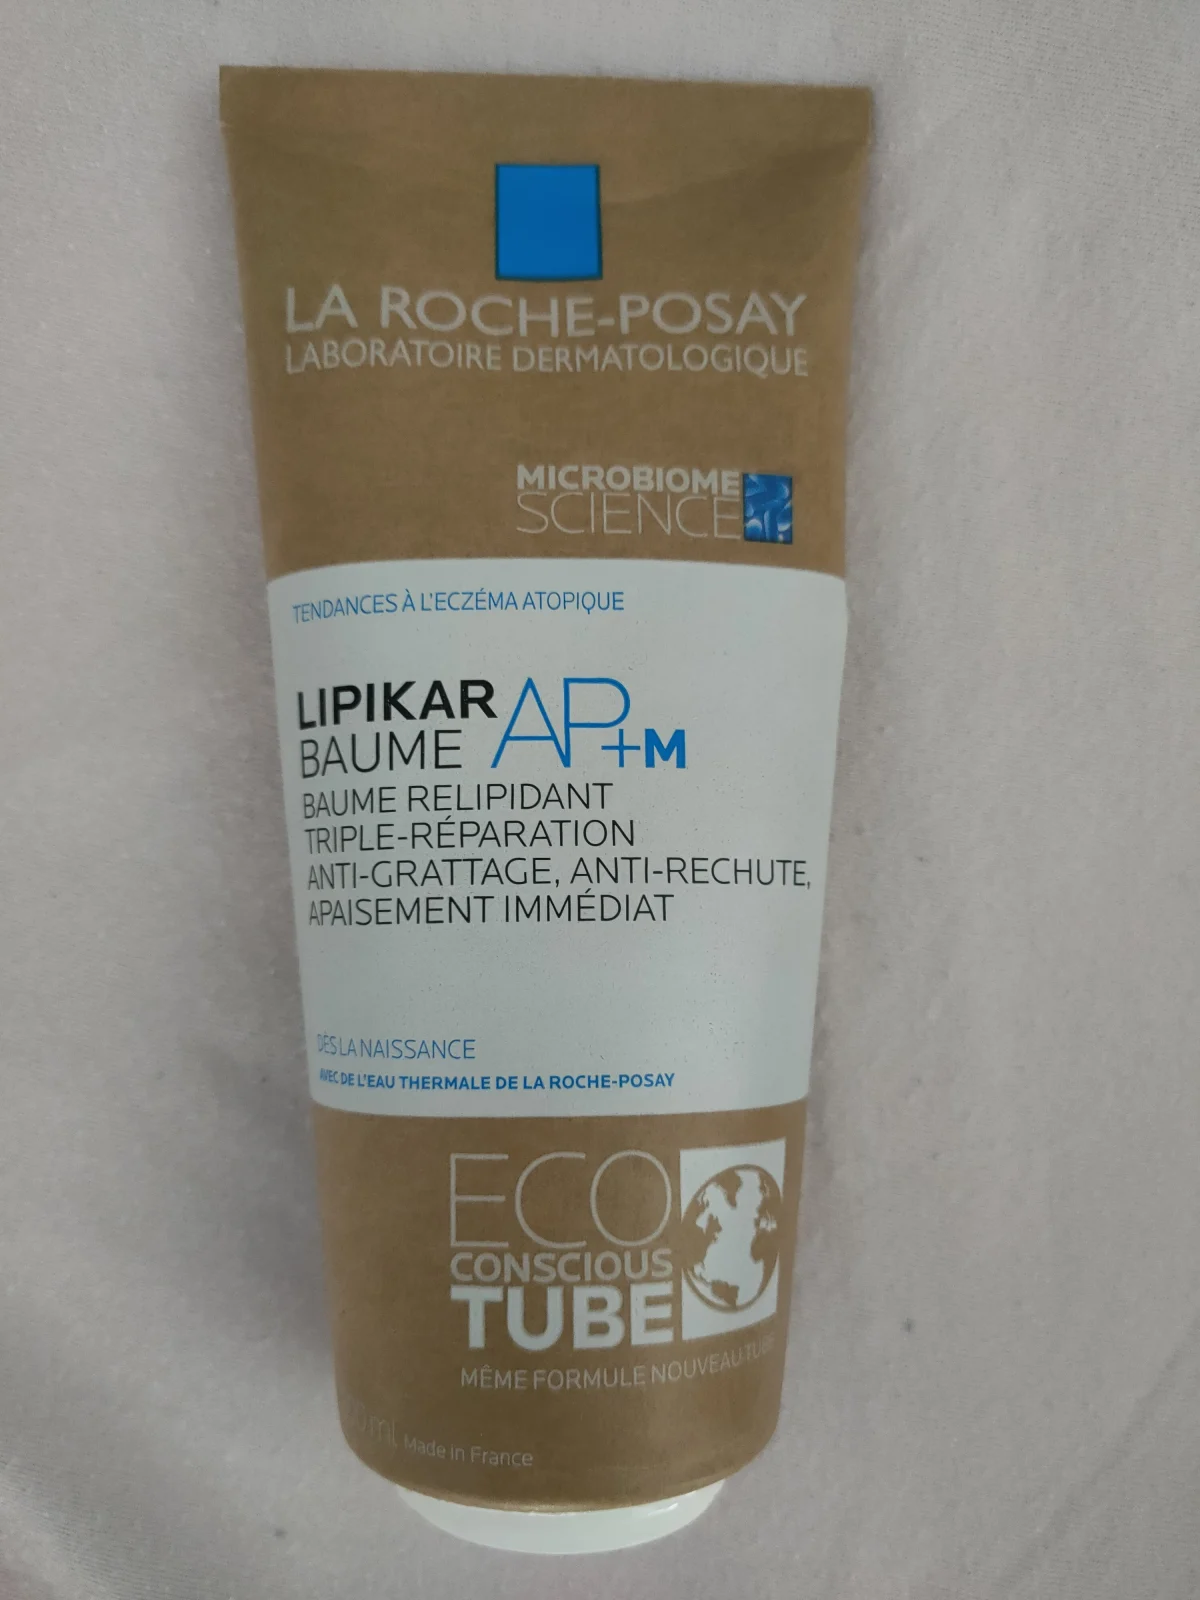 La Roche-Posay Lipikar Baume AP+ - review image